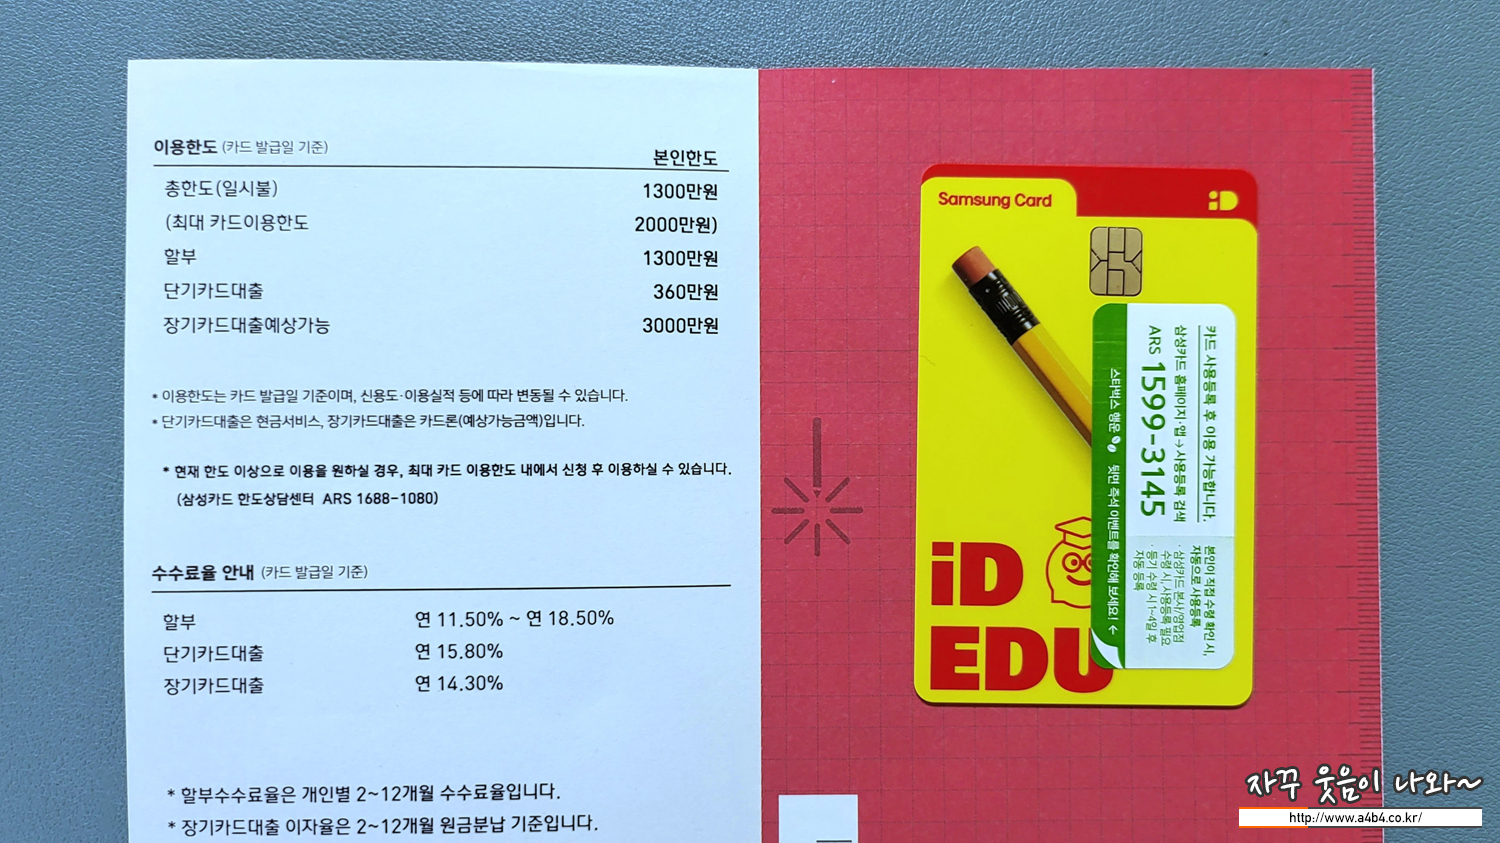 삼성 iD EDU 카드 발급 후기 : 6